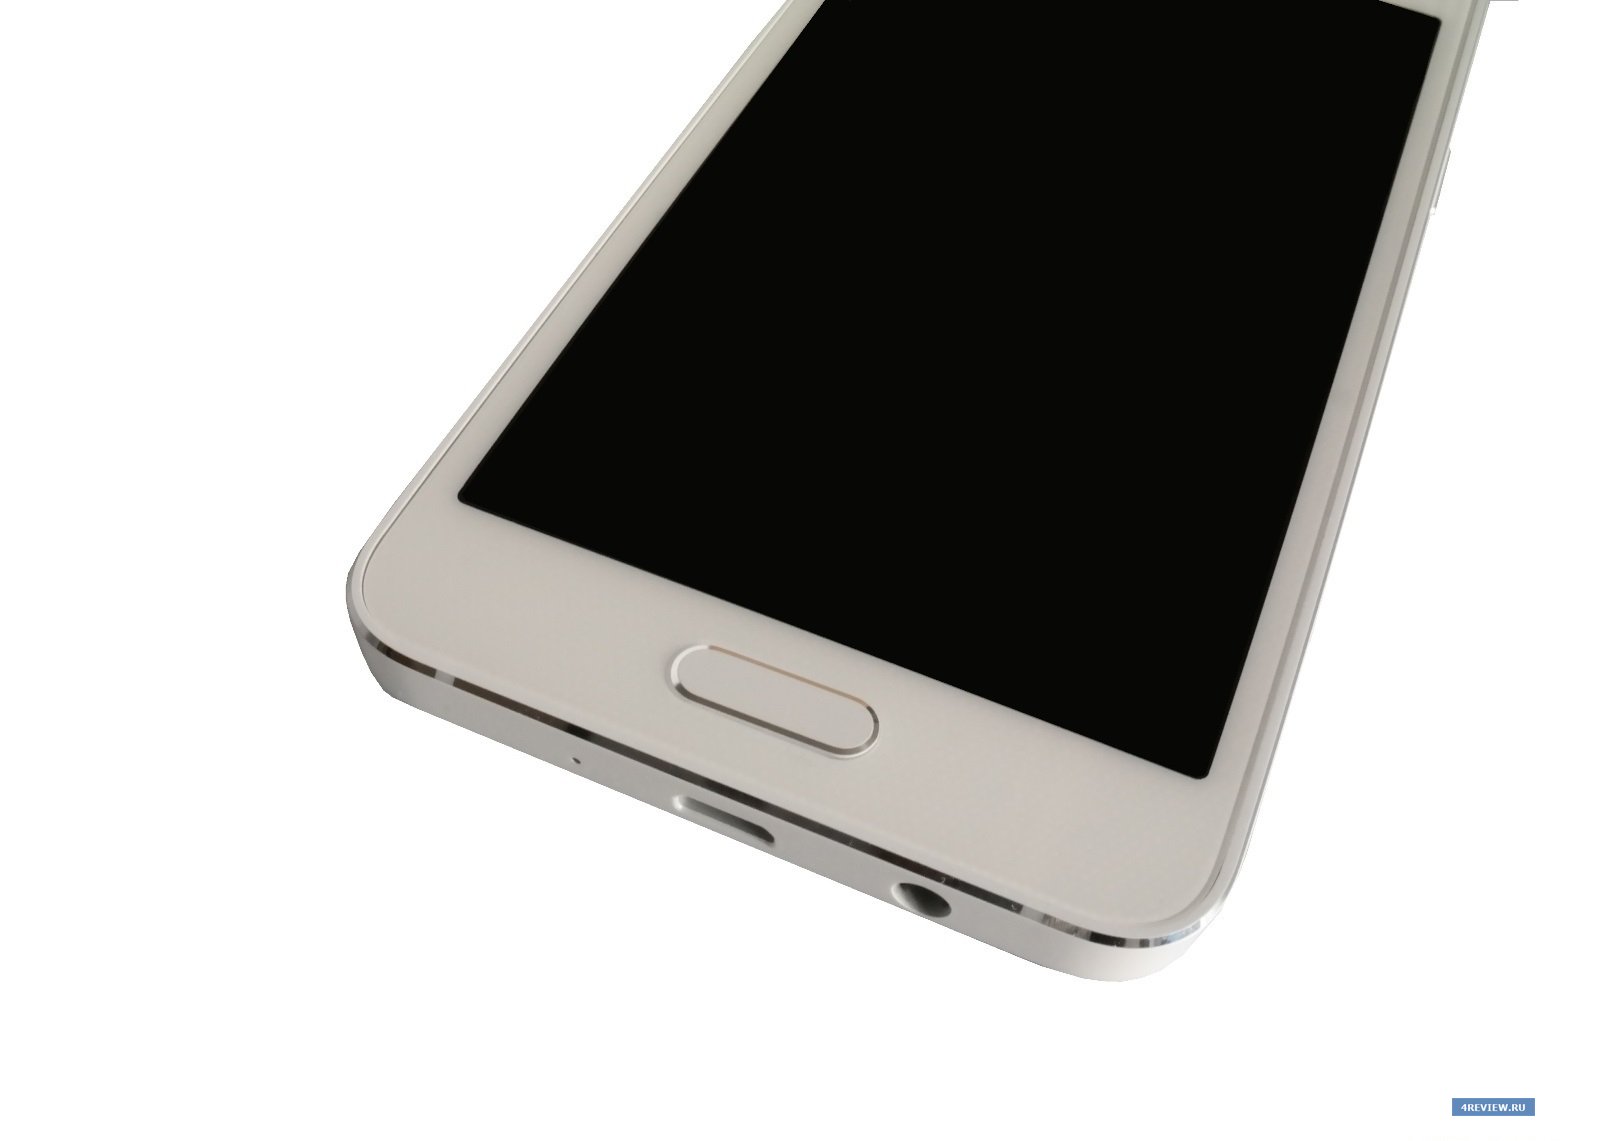 Відгук про Samsung Galaxy A3 – металевий смартфон середнього класу